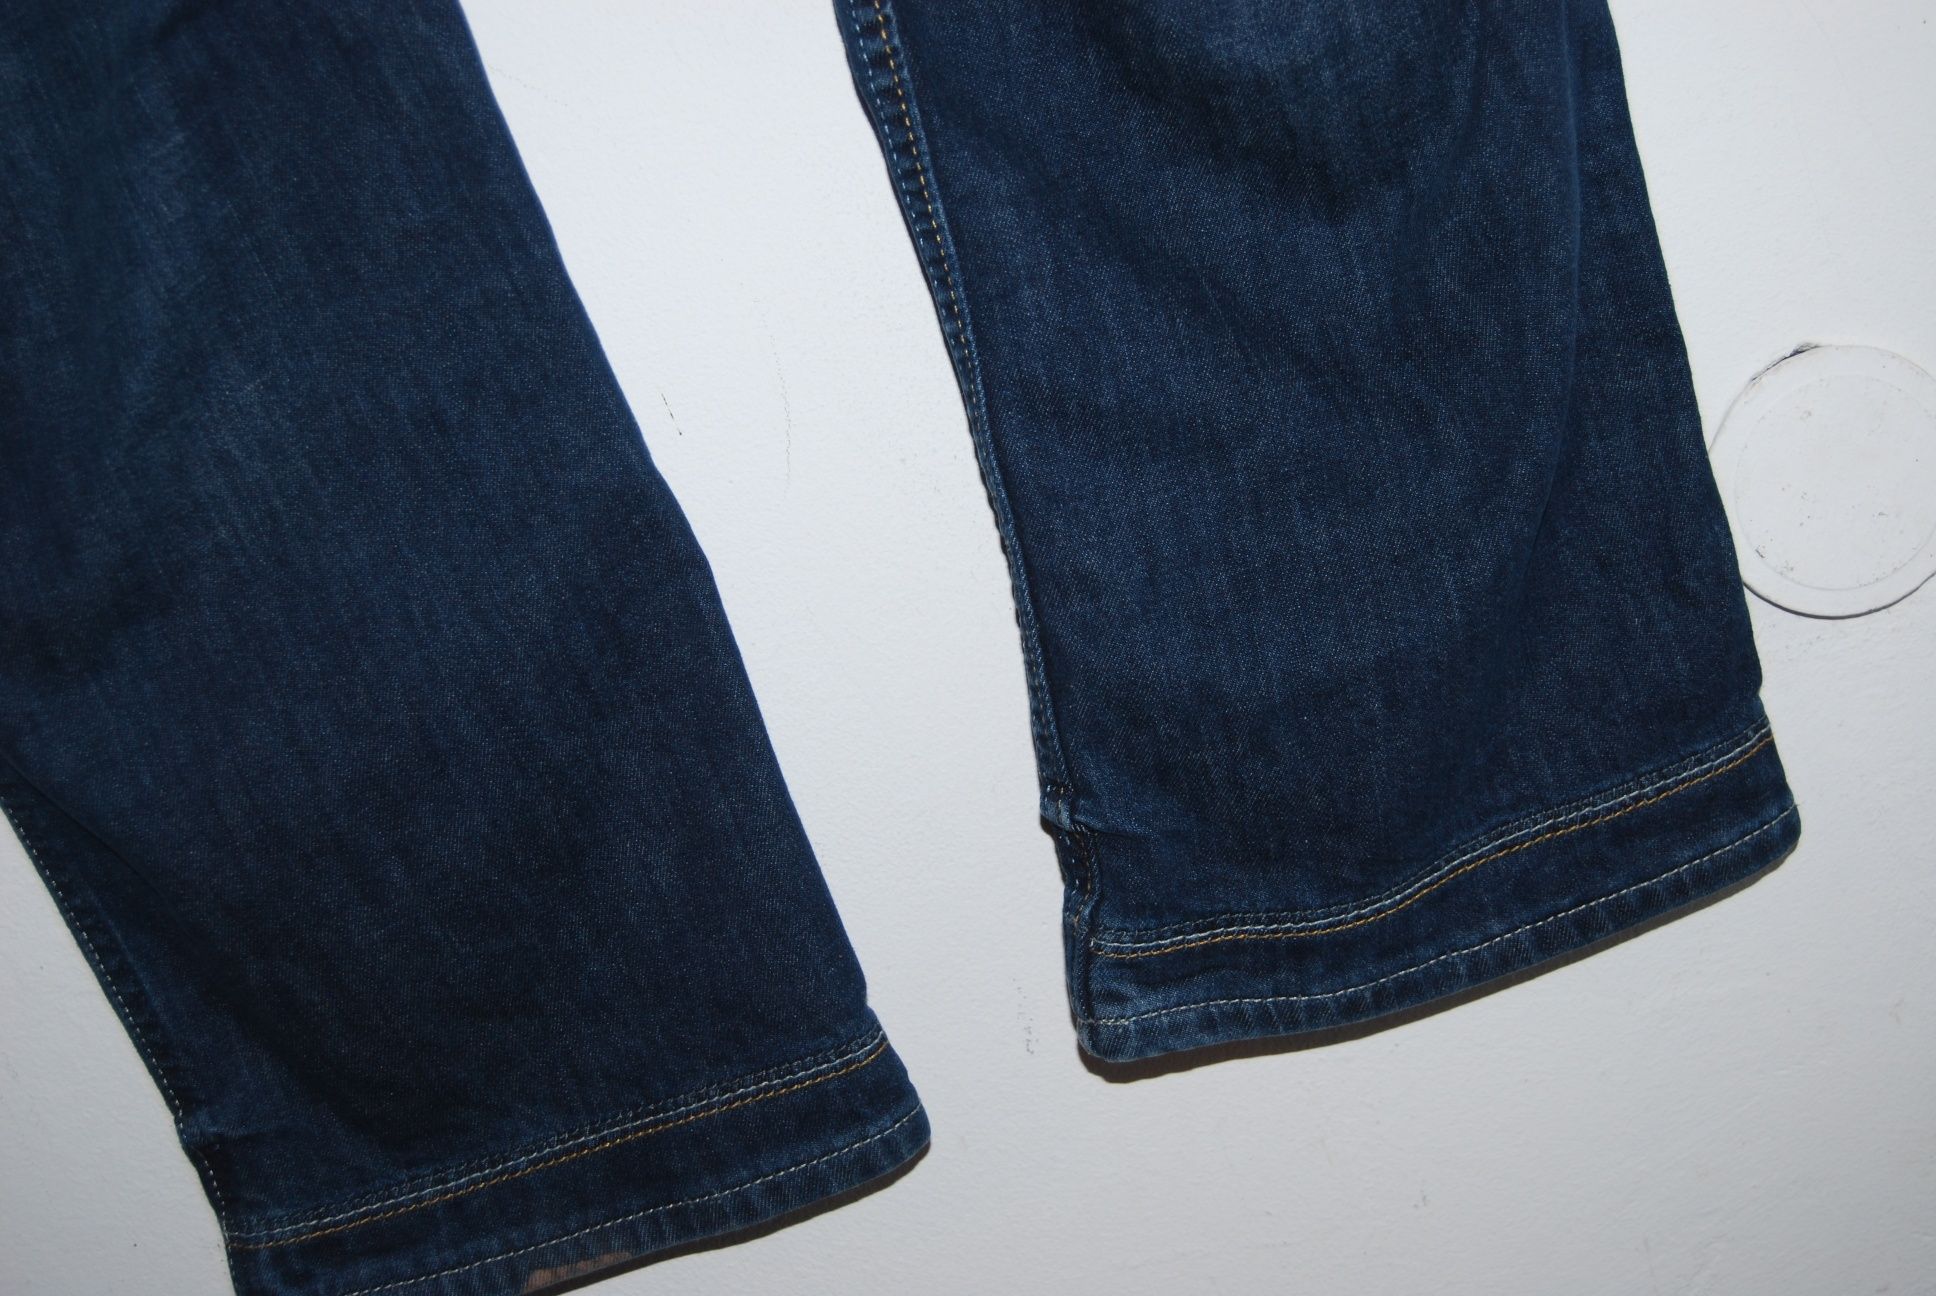 Spodnie dżinsowe Grant Pearson W42L33 dł. 108 cm calkowita